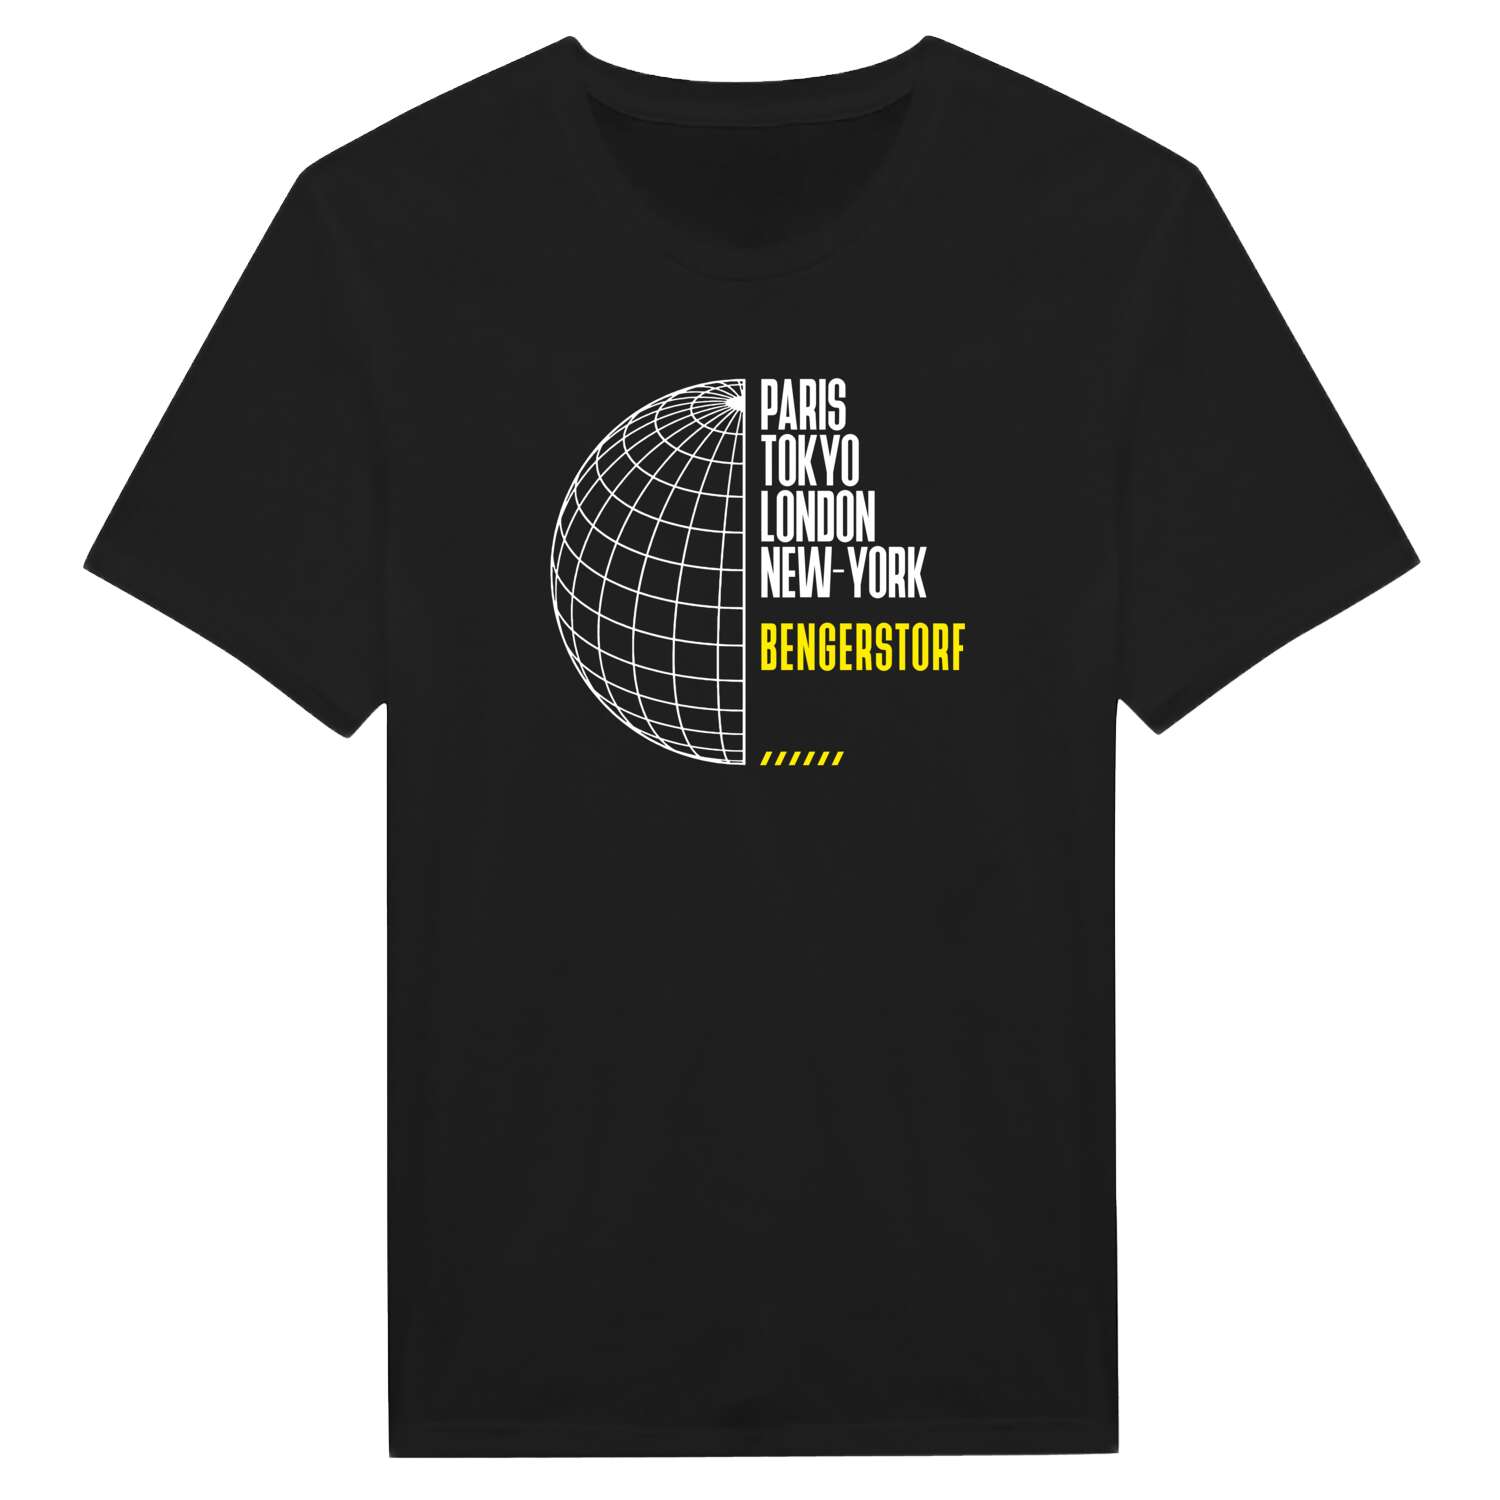 Bengerstorf T-Shirt »Paris Tokyo London«